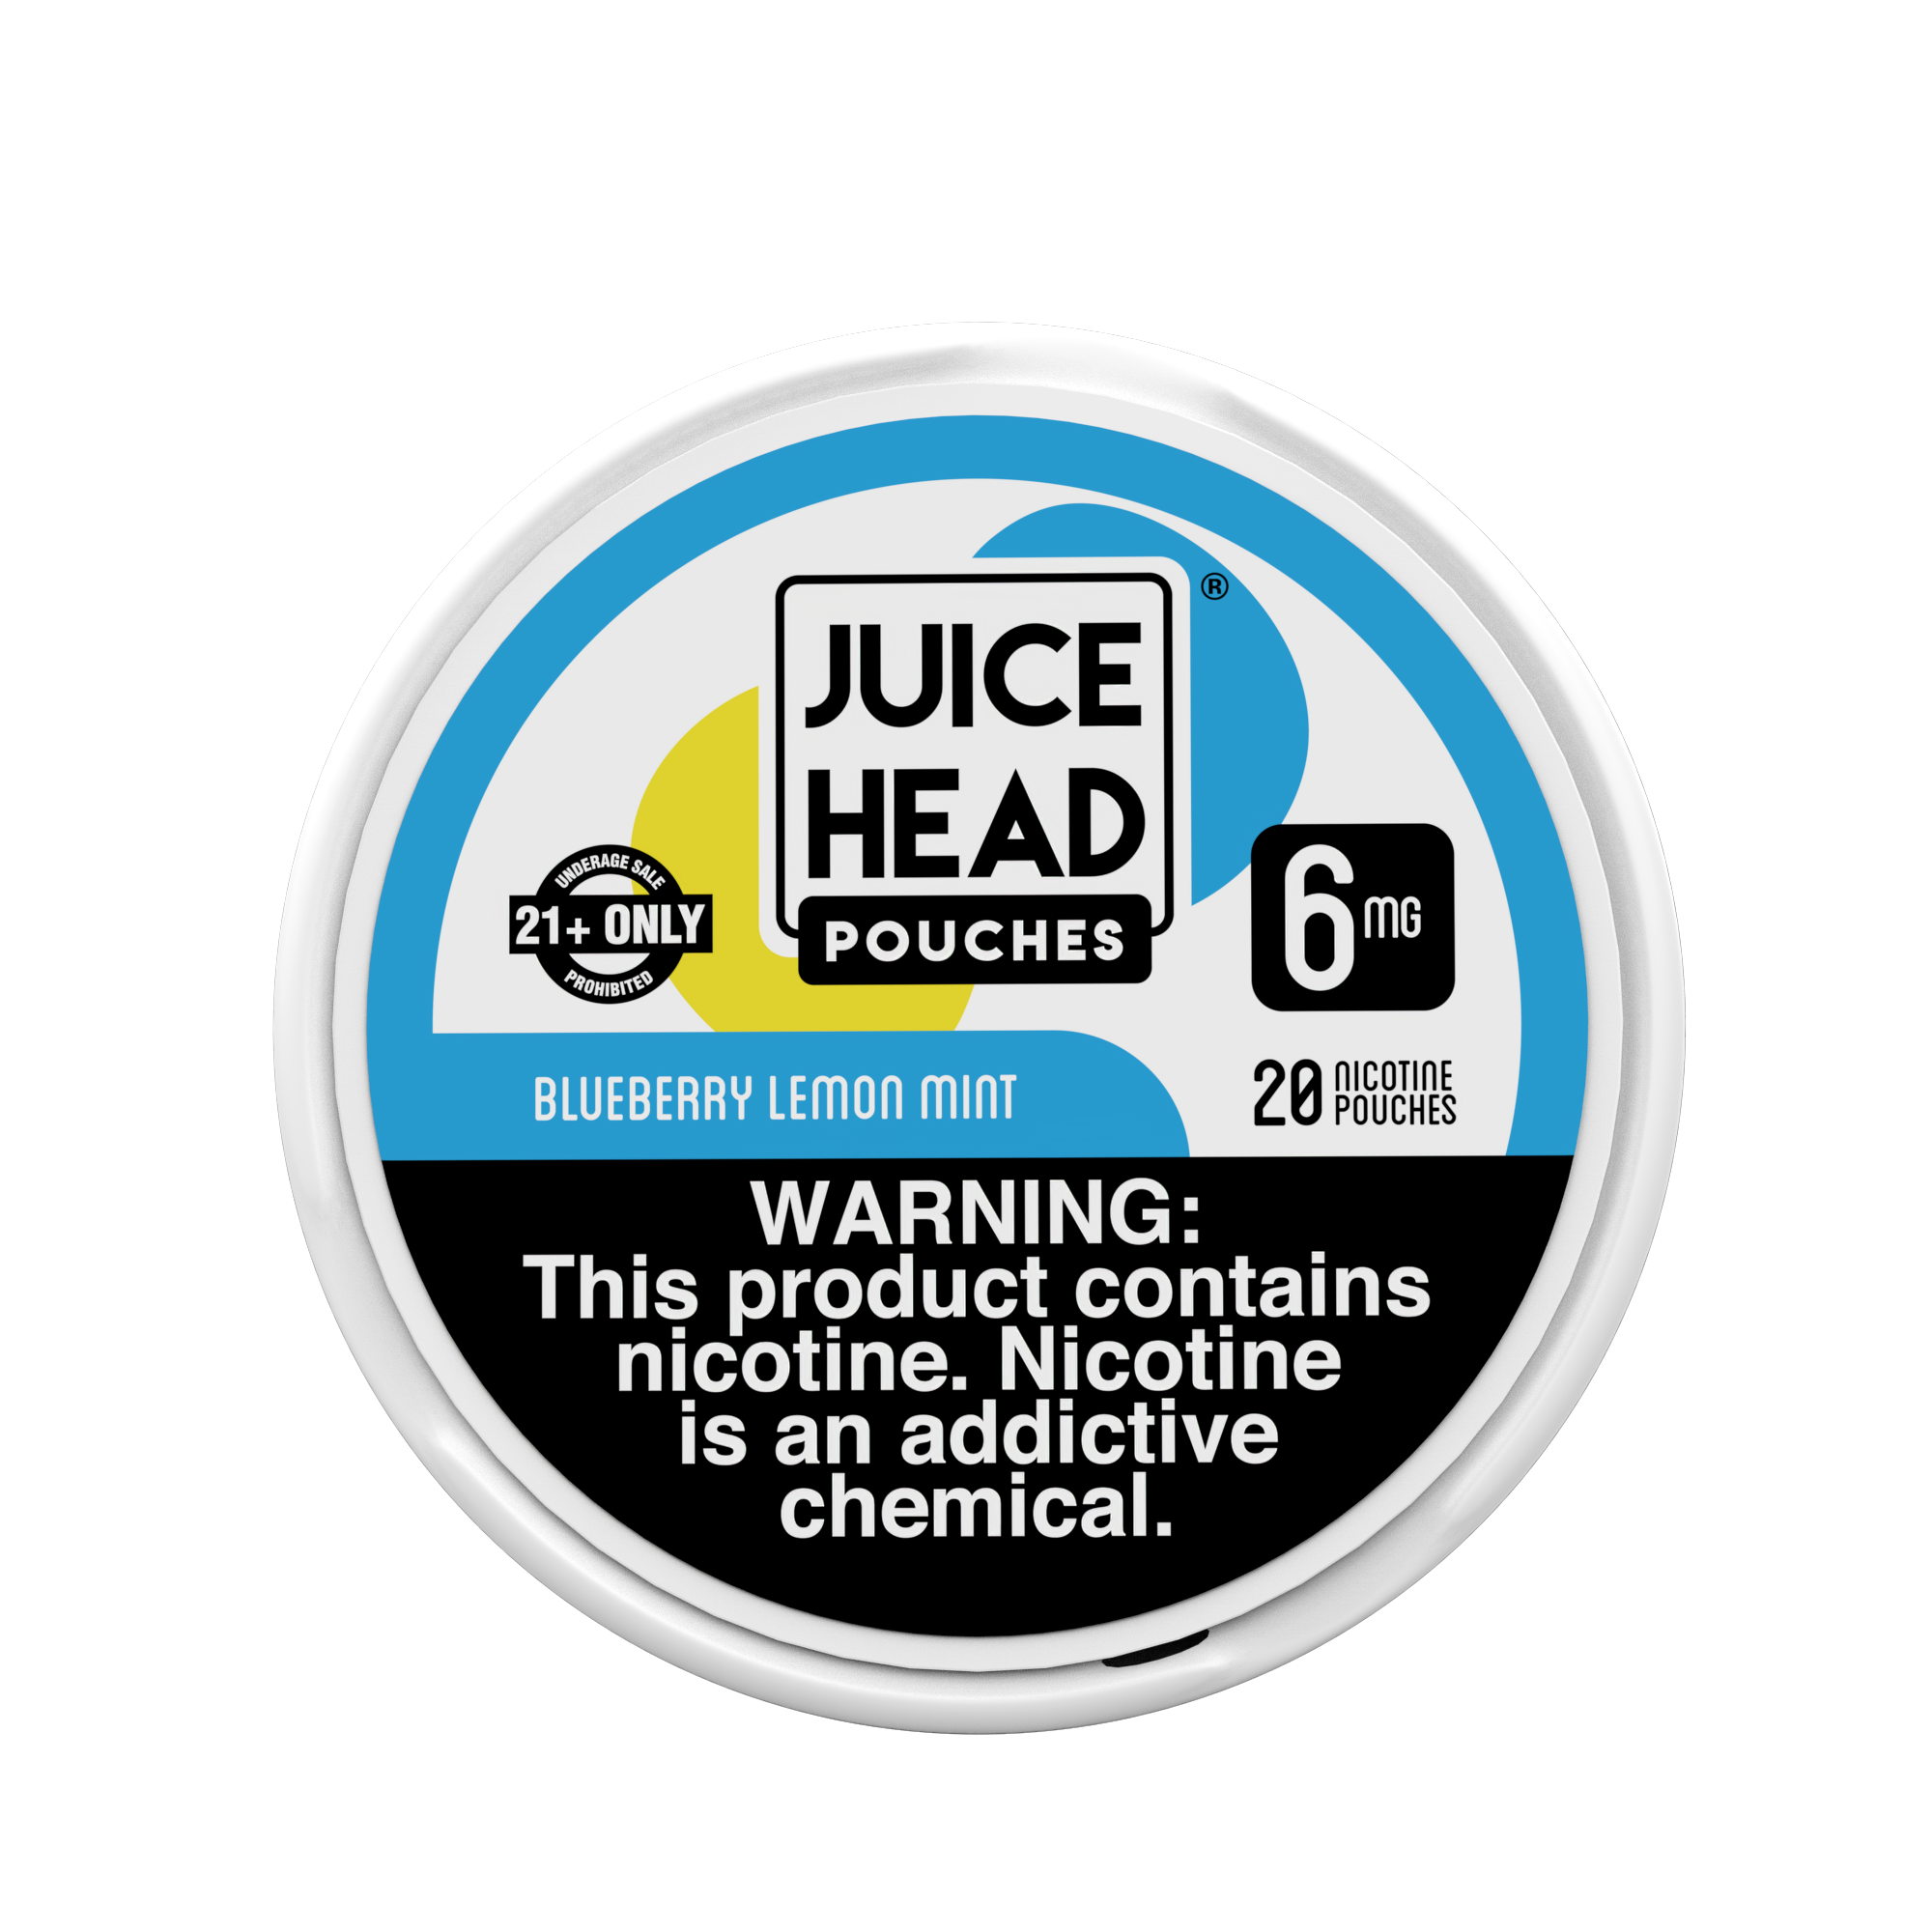 JUICE HEAD POUCHES - Blueberry Lemon Mint